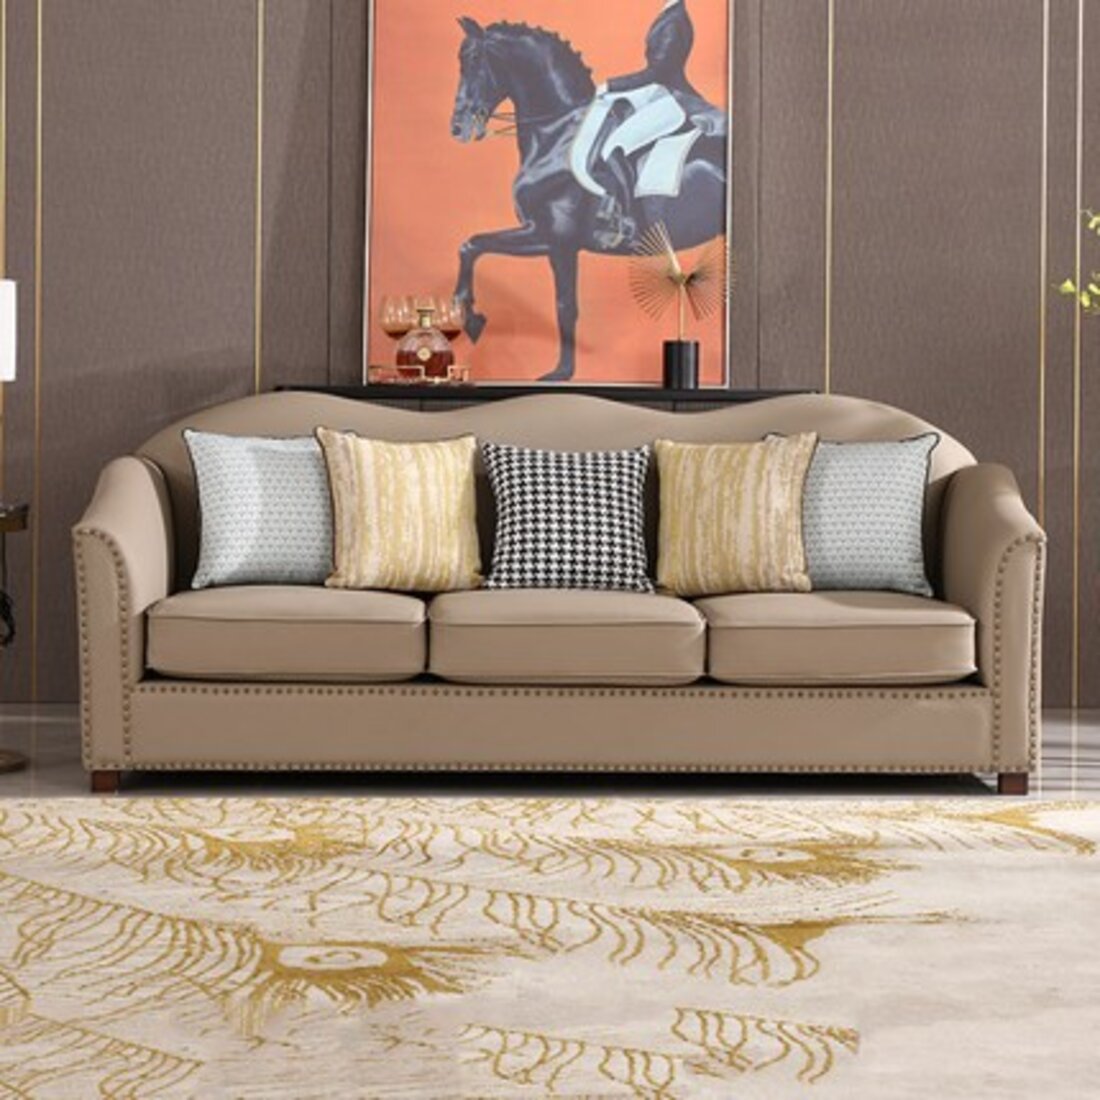 《美式田园》客厅组合沙发装修效果图 – 设计本装修效果图